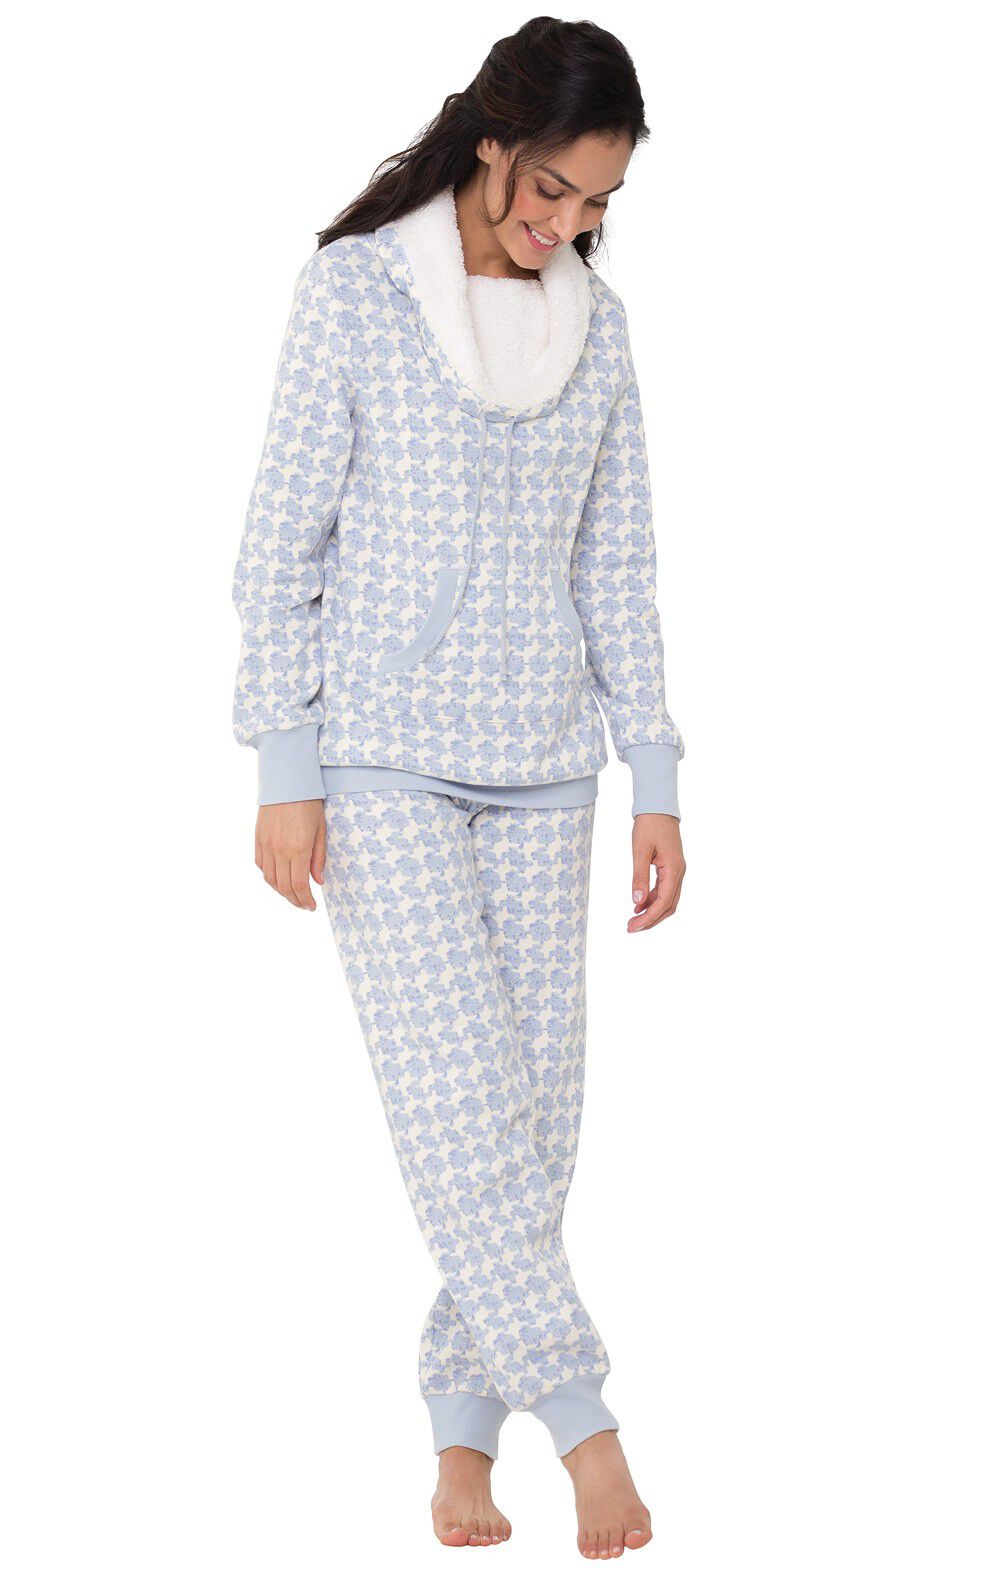 PajamaGram Fleece Pajamas Women Soft Winter Pajamas for Women